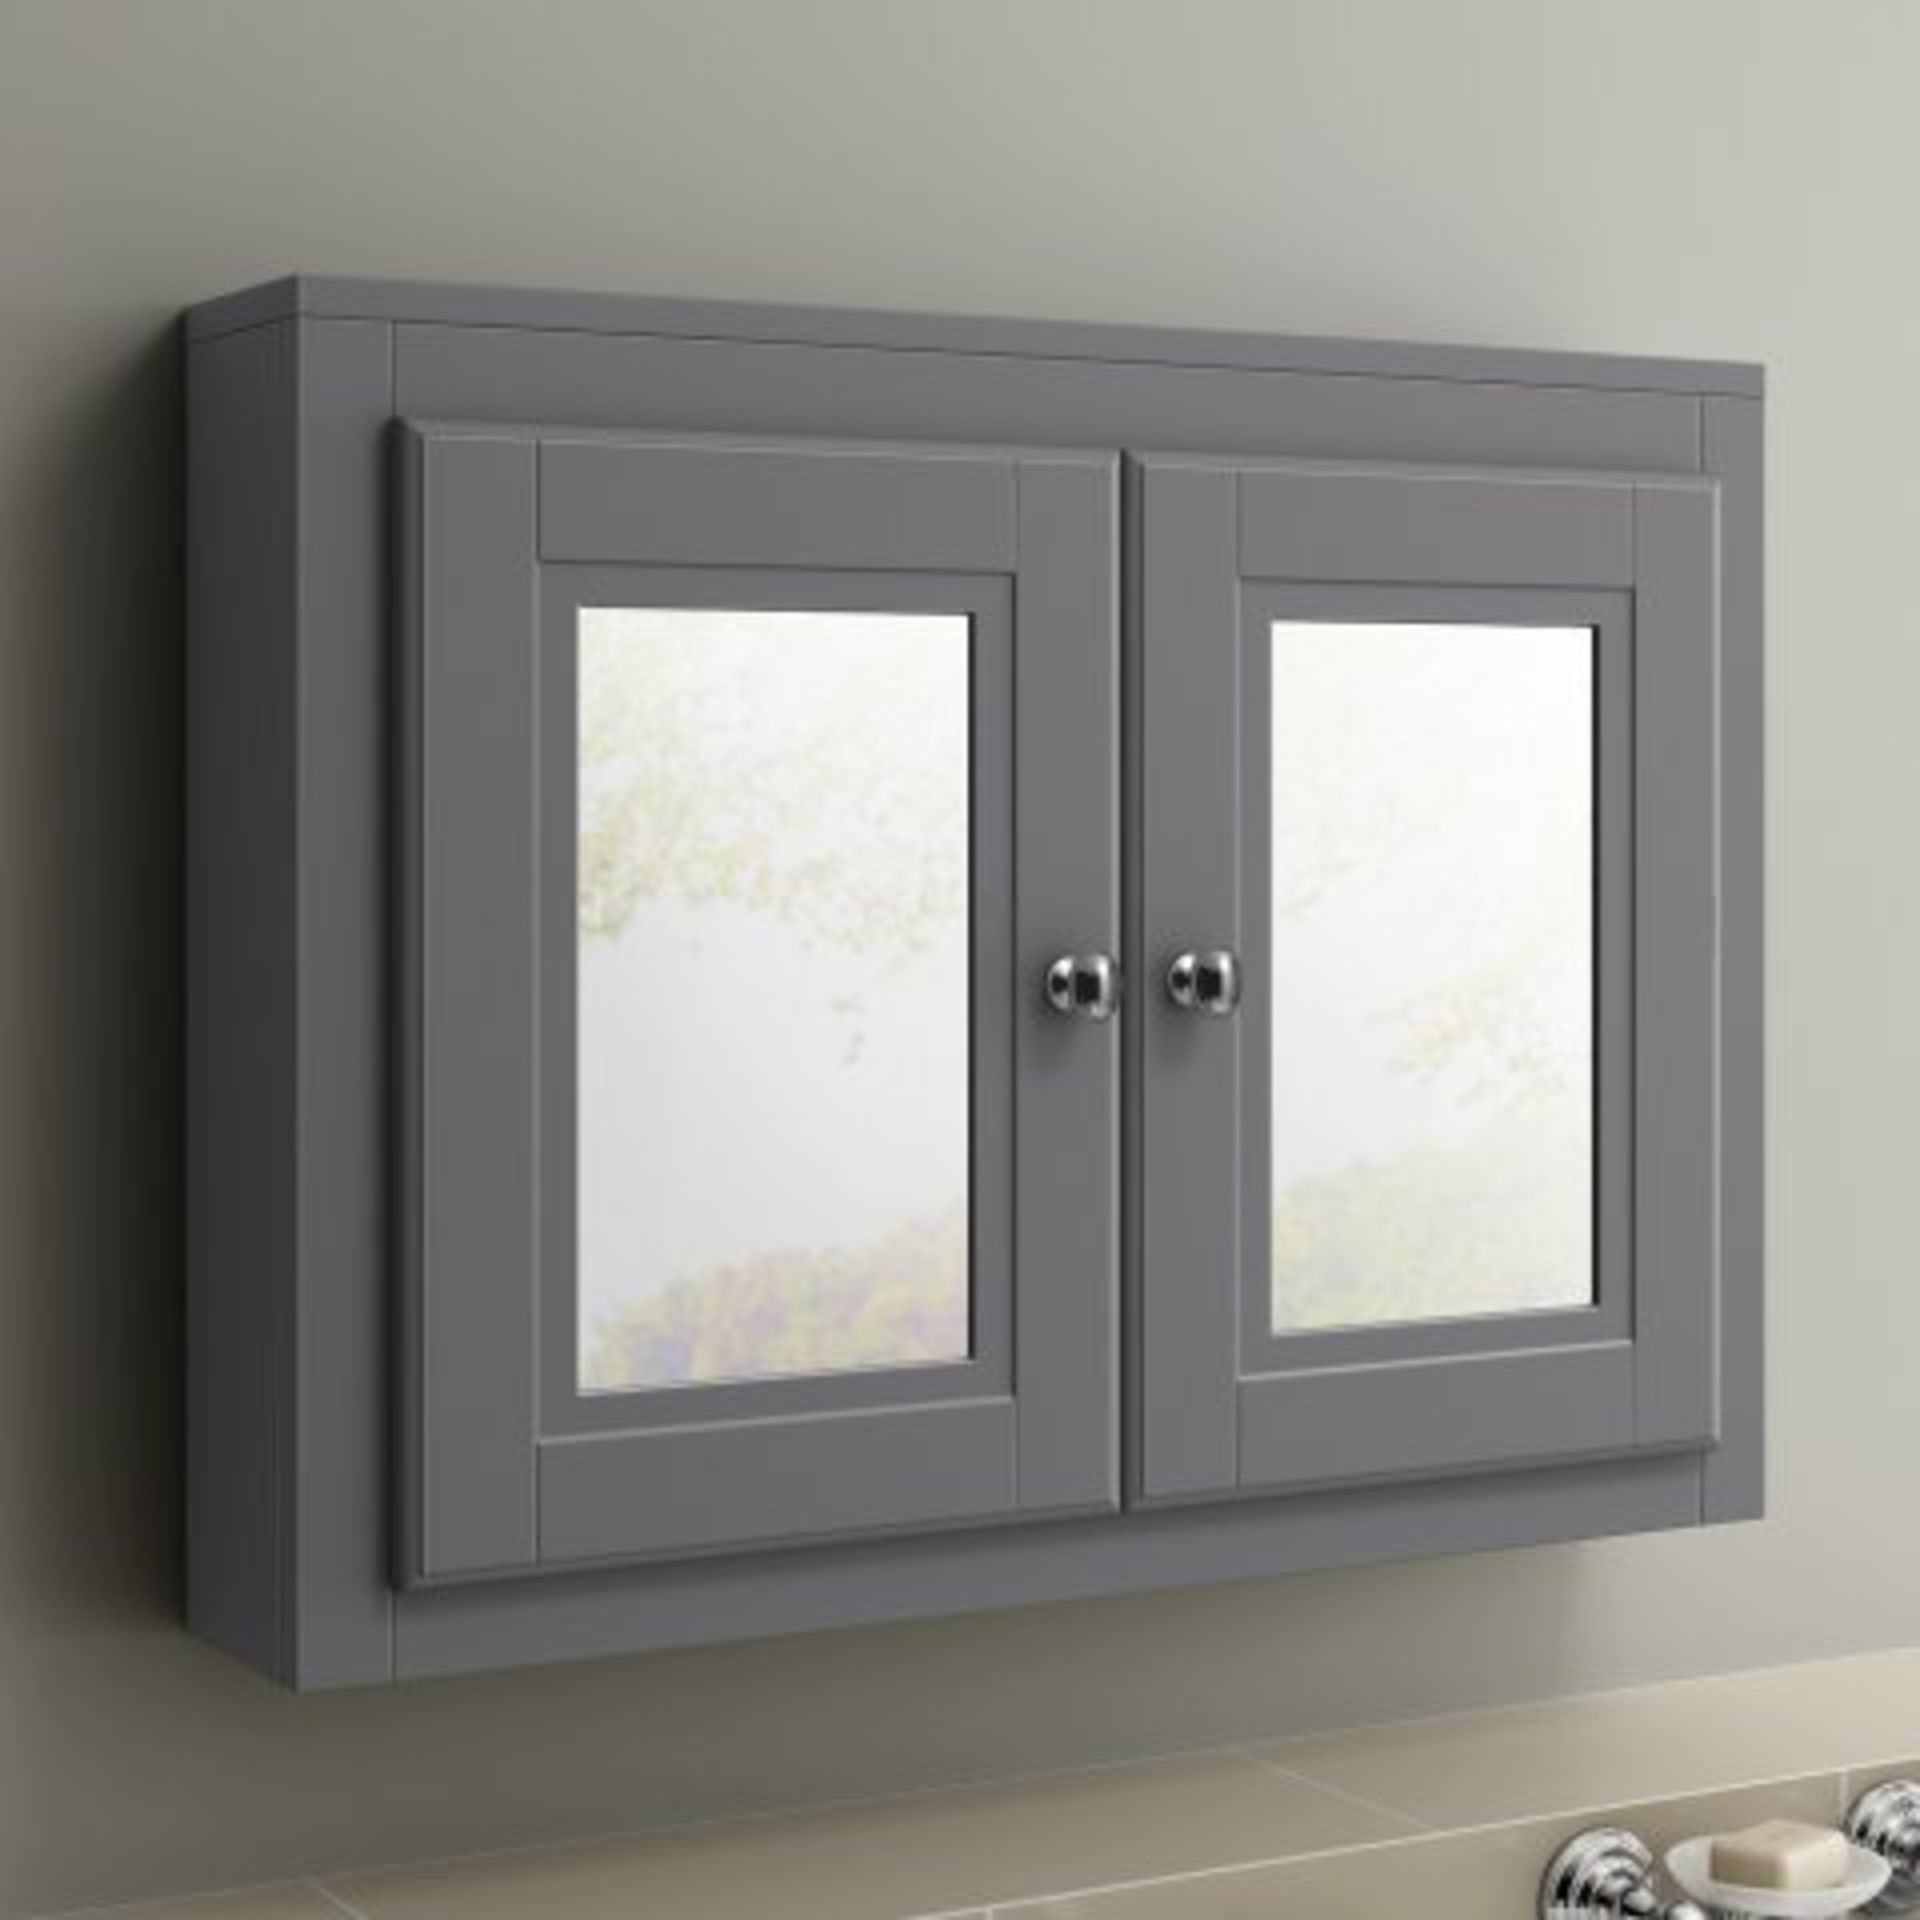 (29) 800mm Cambridge Midnight Grey Double Door Mirror Cabinet Our Cambridge Midnight Grey mirror